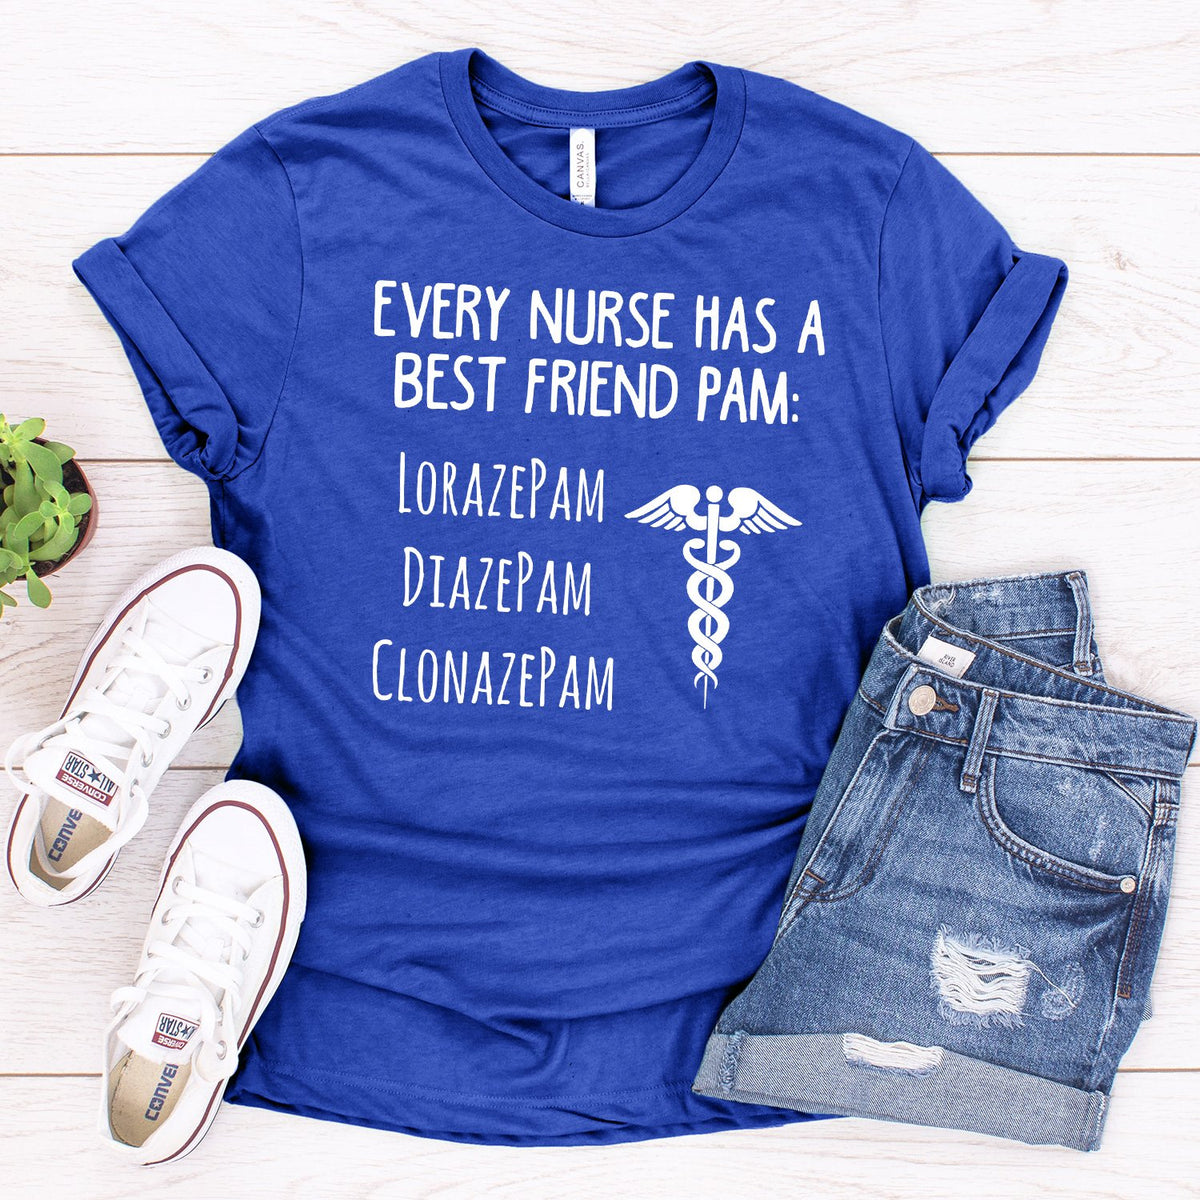 Every Nurse Has A Best Friend Pam - Short Sleeve Tee Shirt